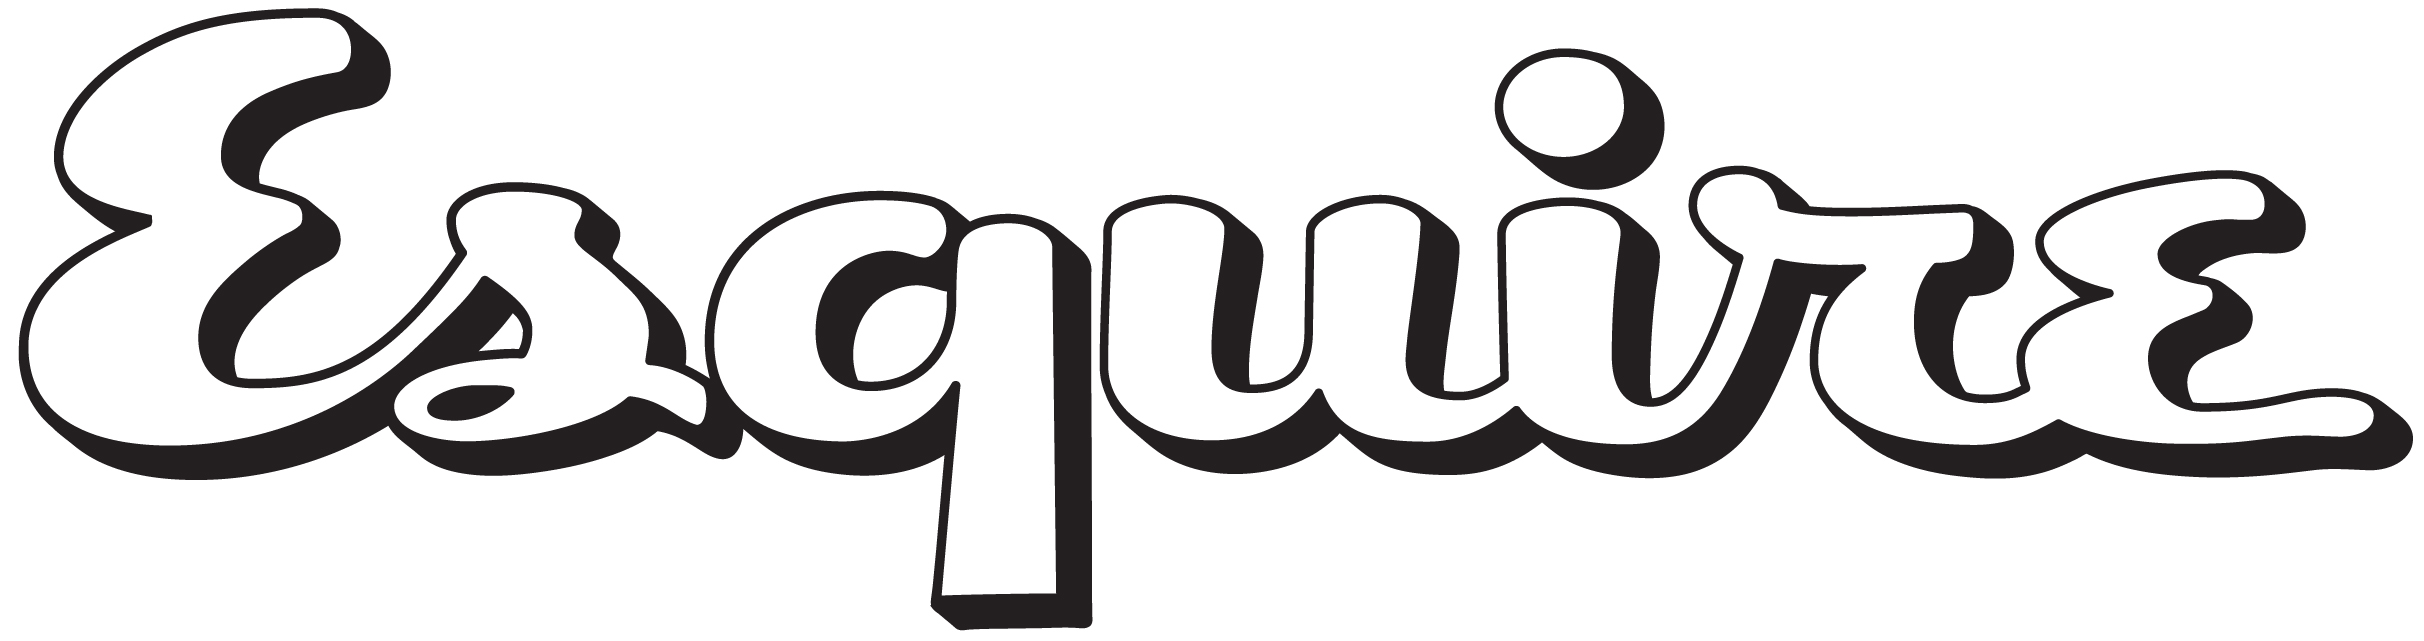 Esquire Logos.